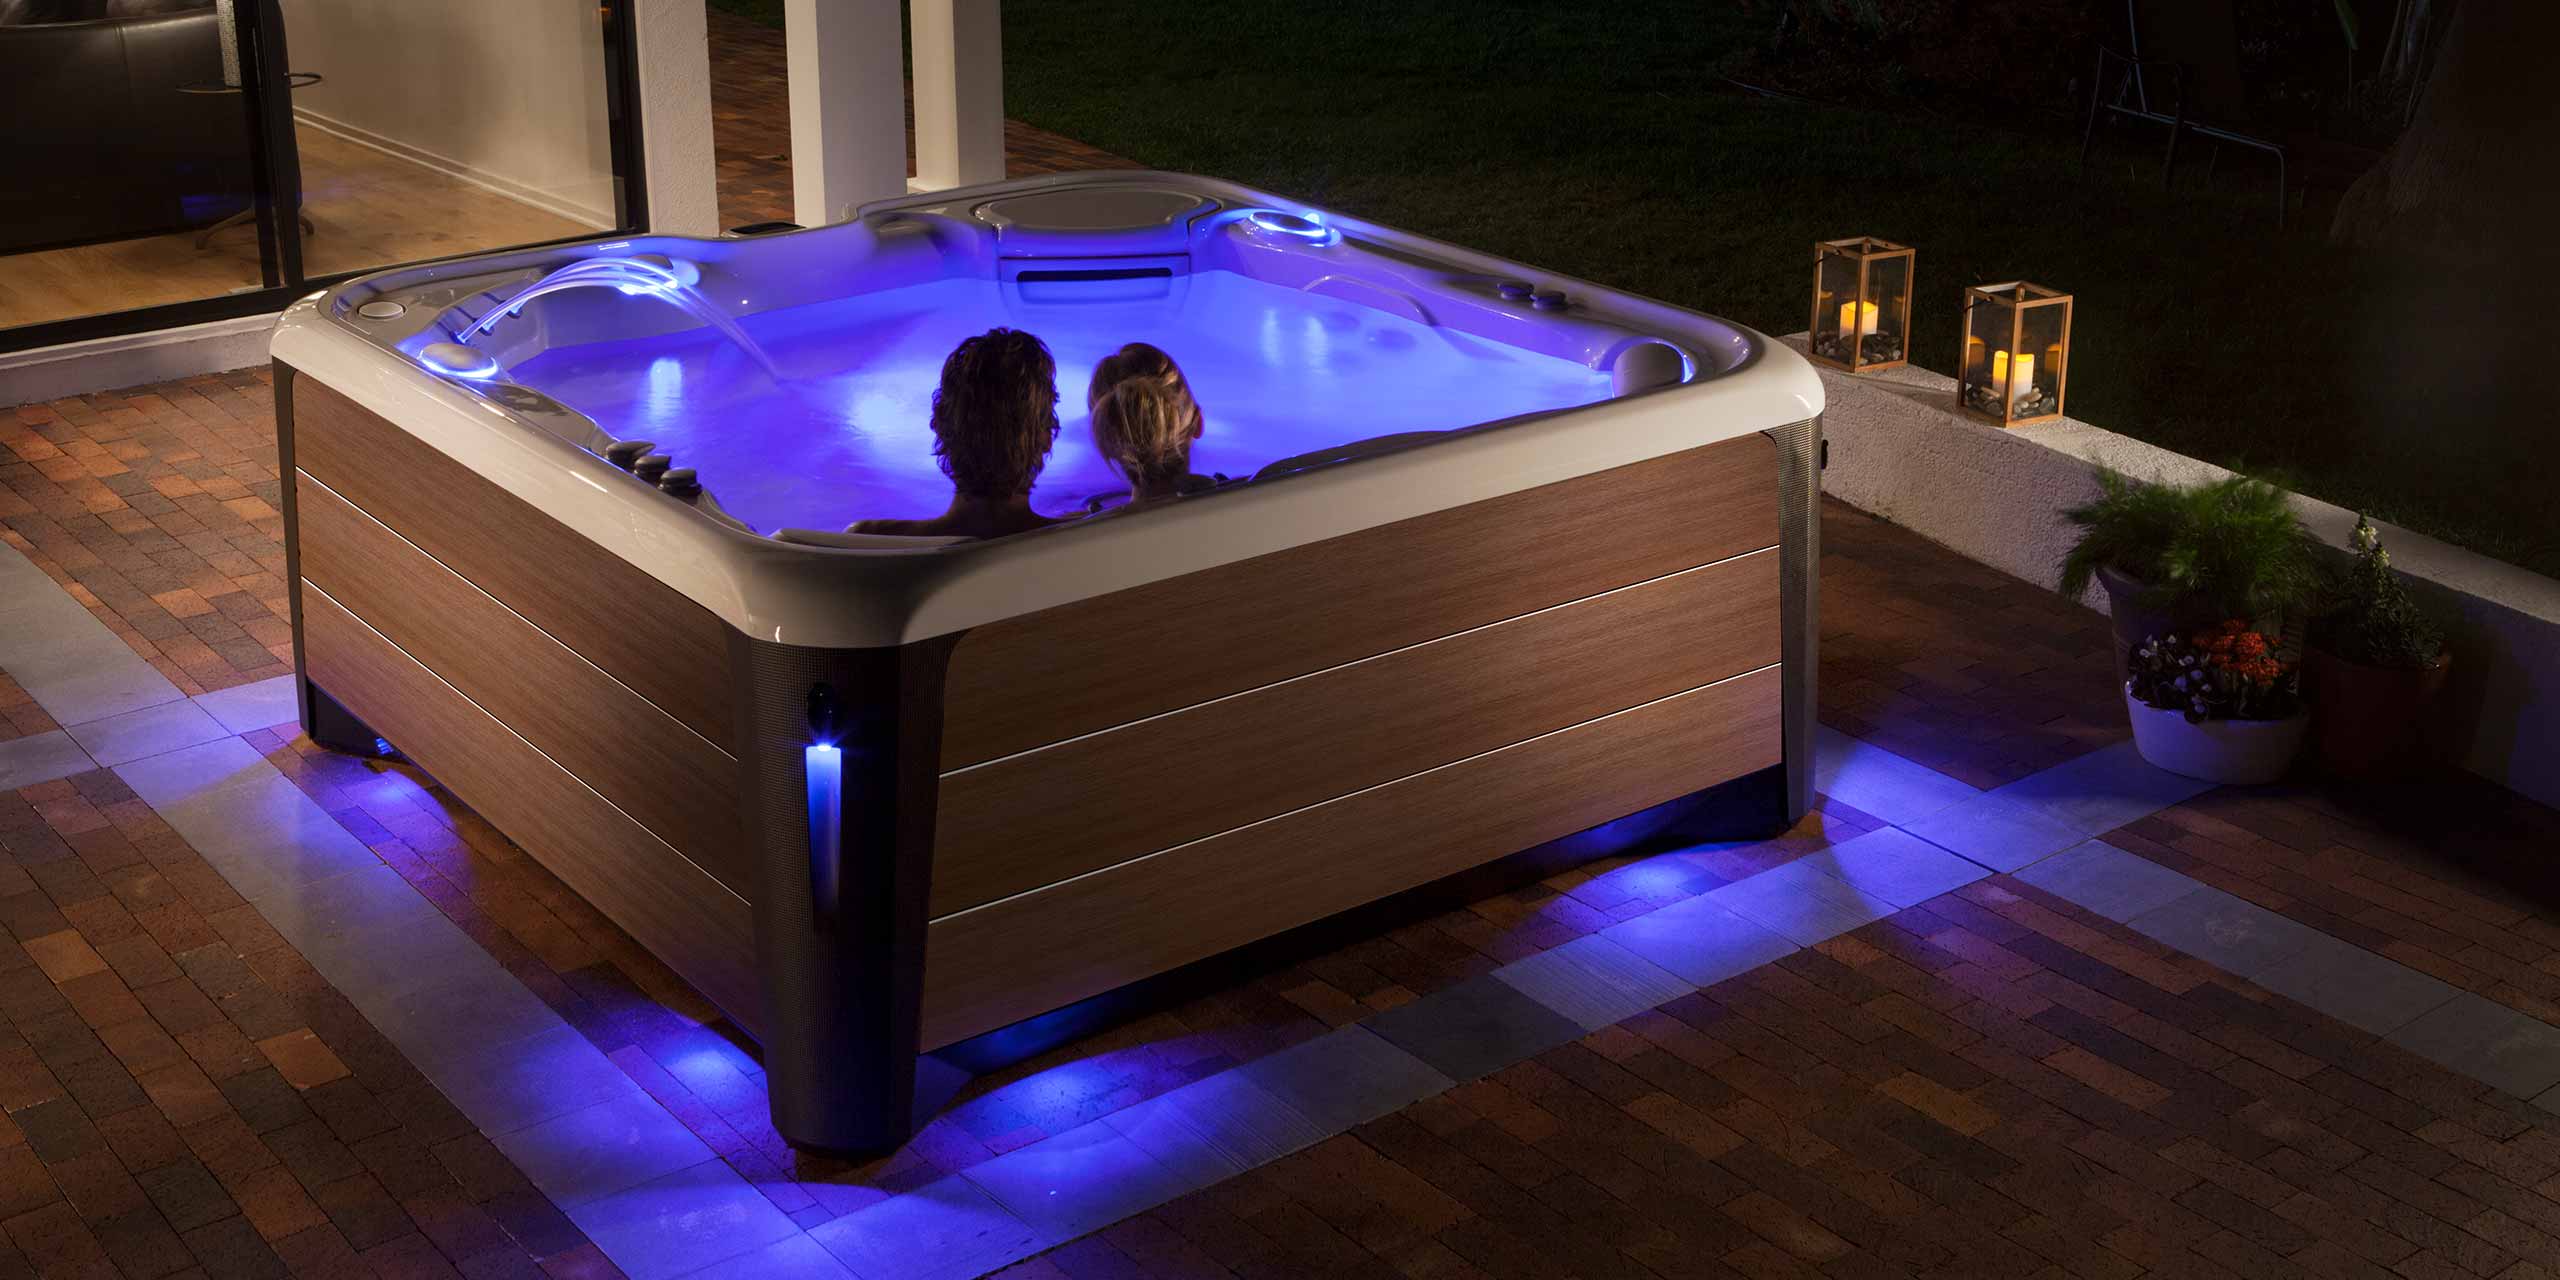 a couple at night enjoying a hot tub